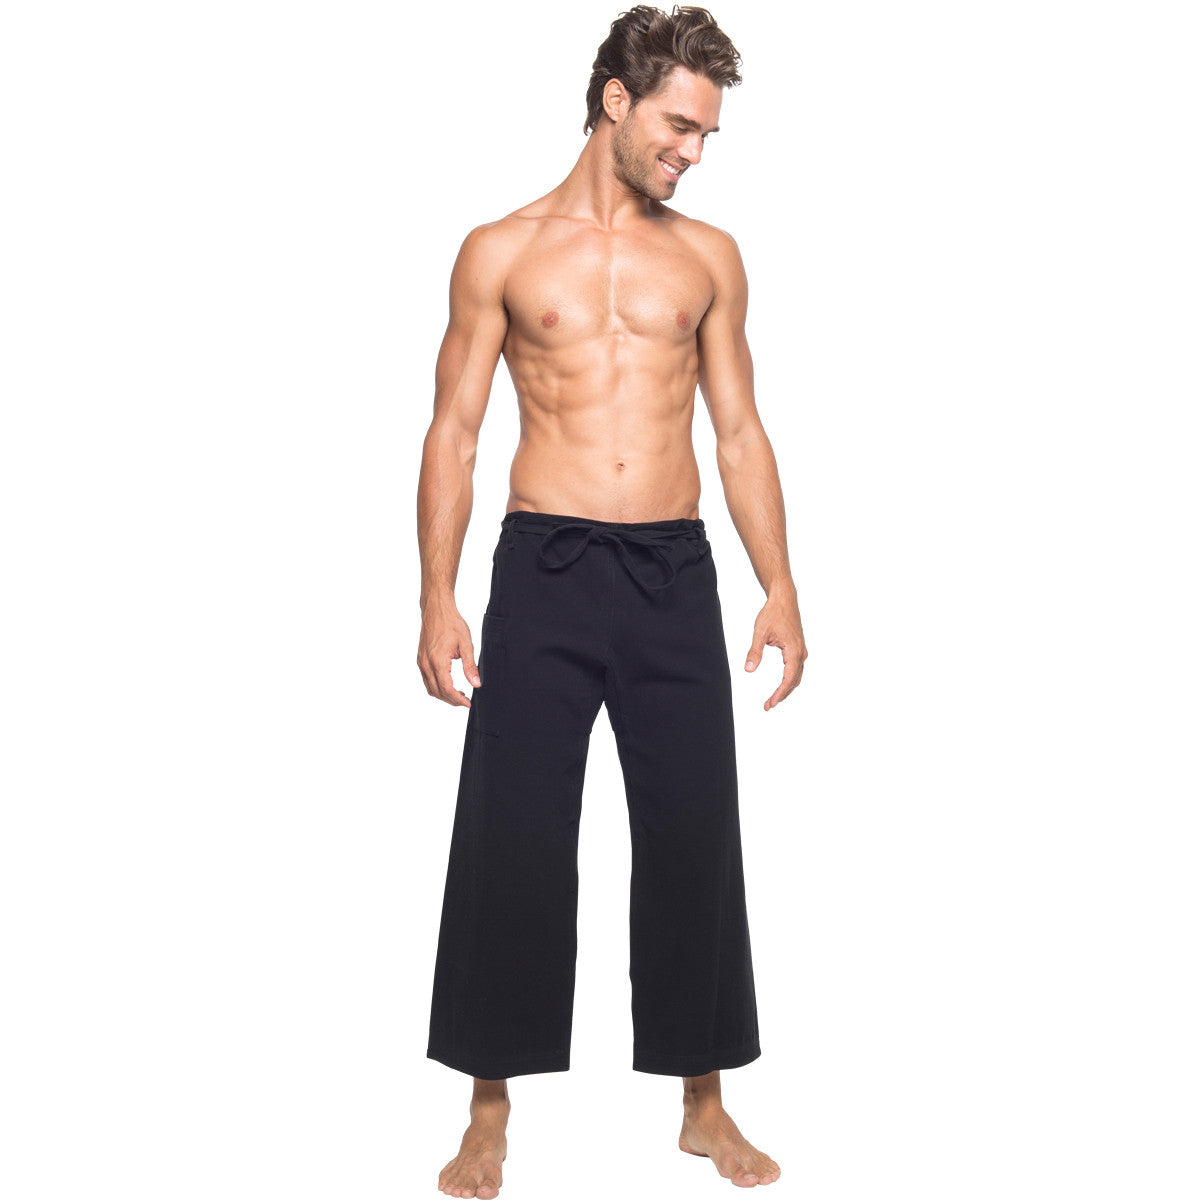 The 8 Best Men's Yoga Pants In 2023